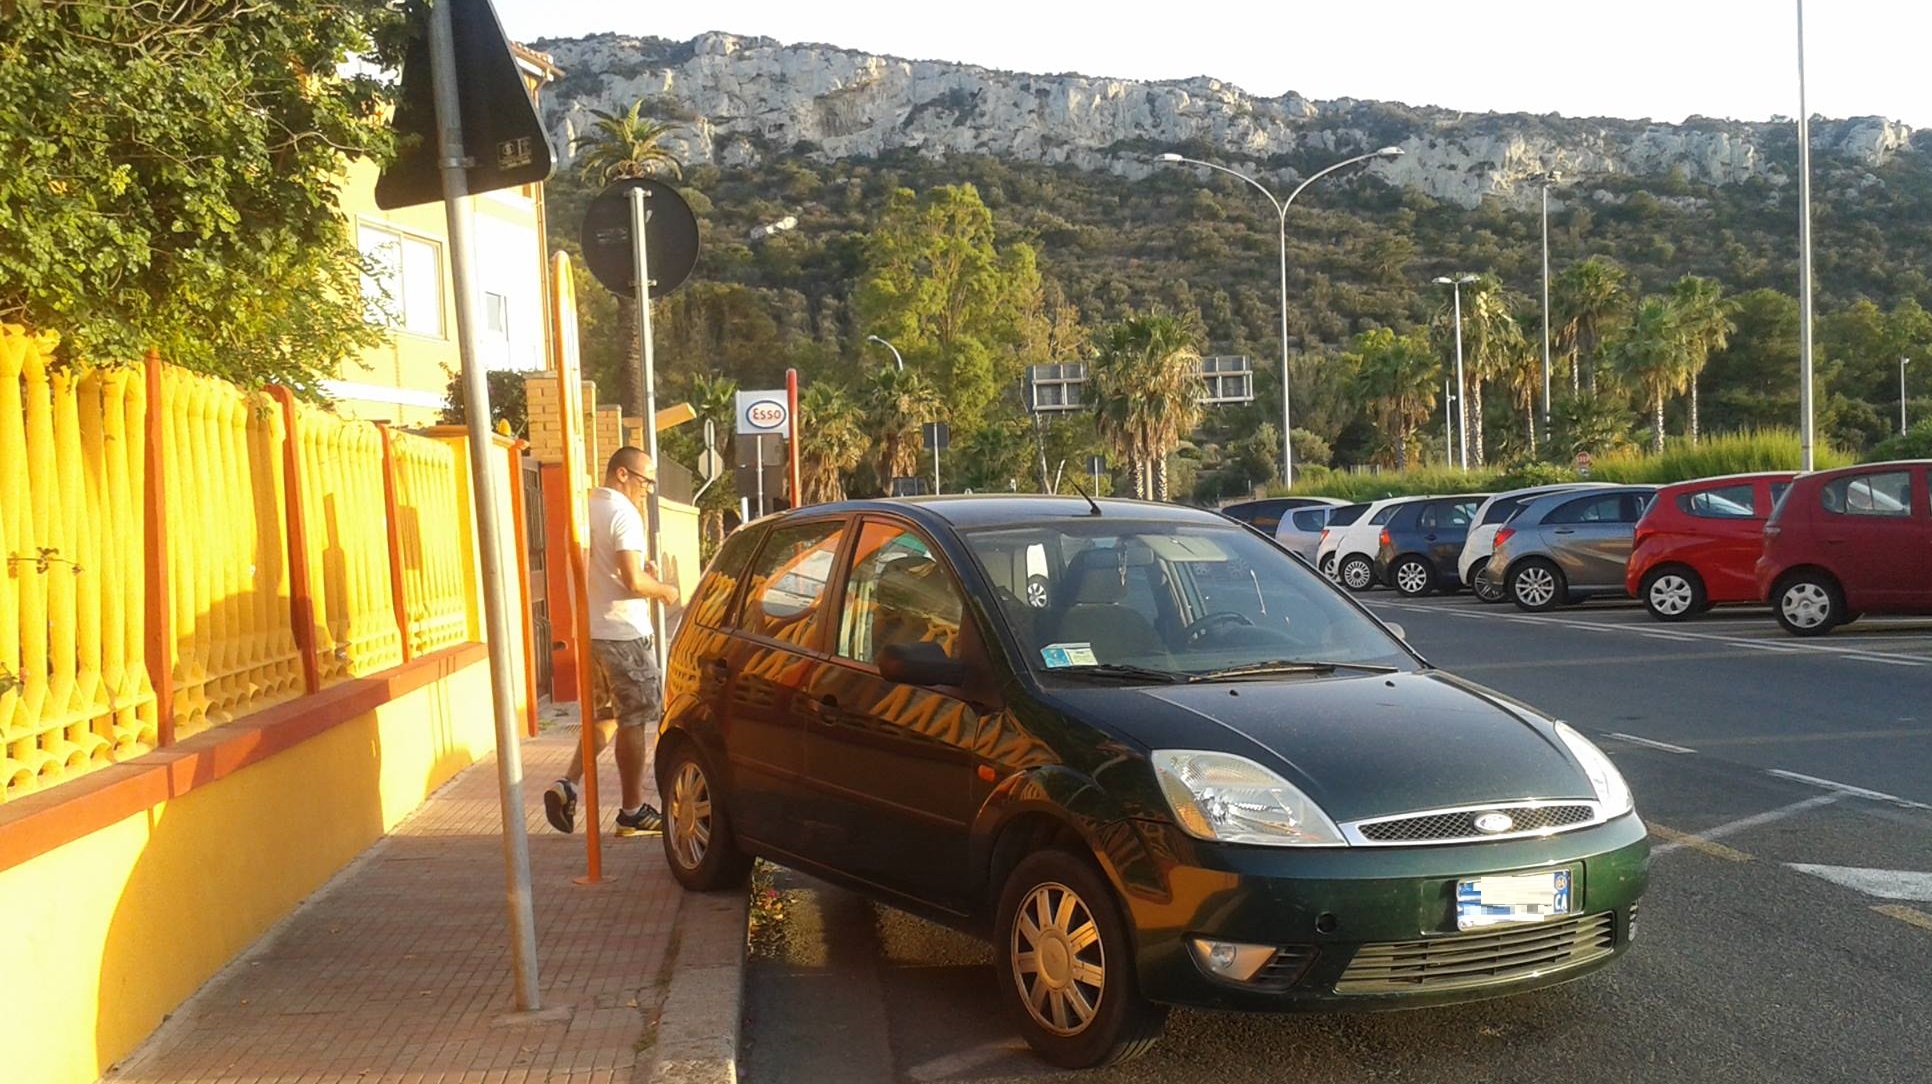 frenamano1 Cagliari, auto parcheggiata si muove da sola attraversa la strada